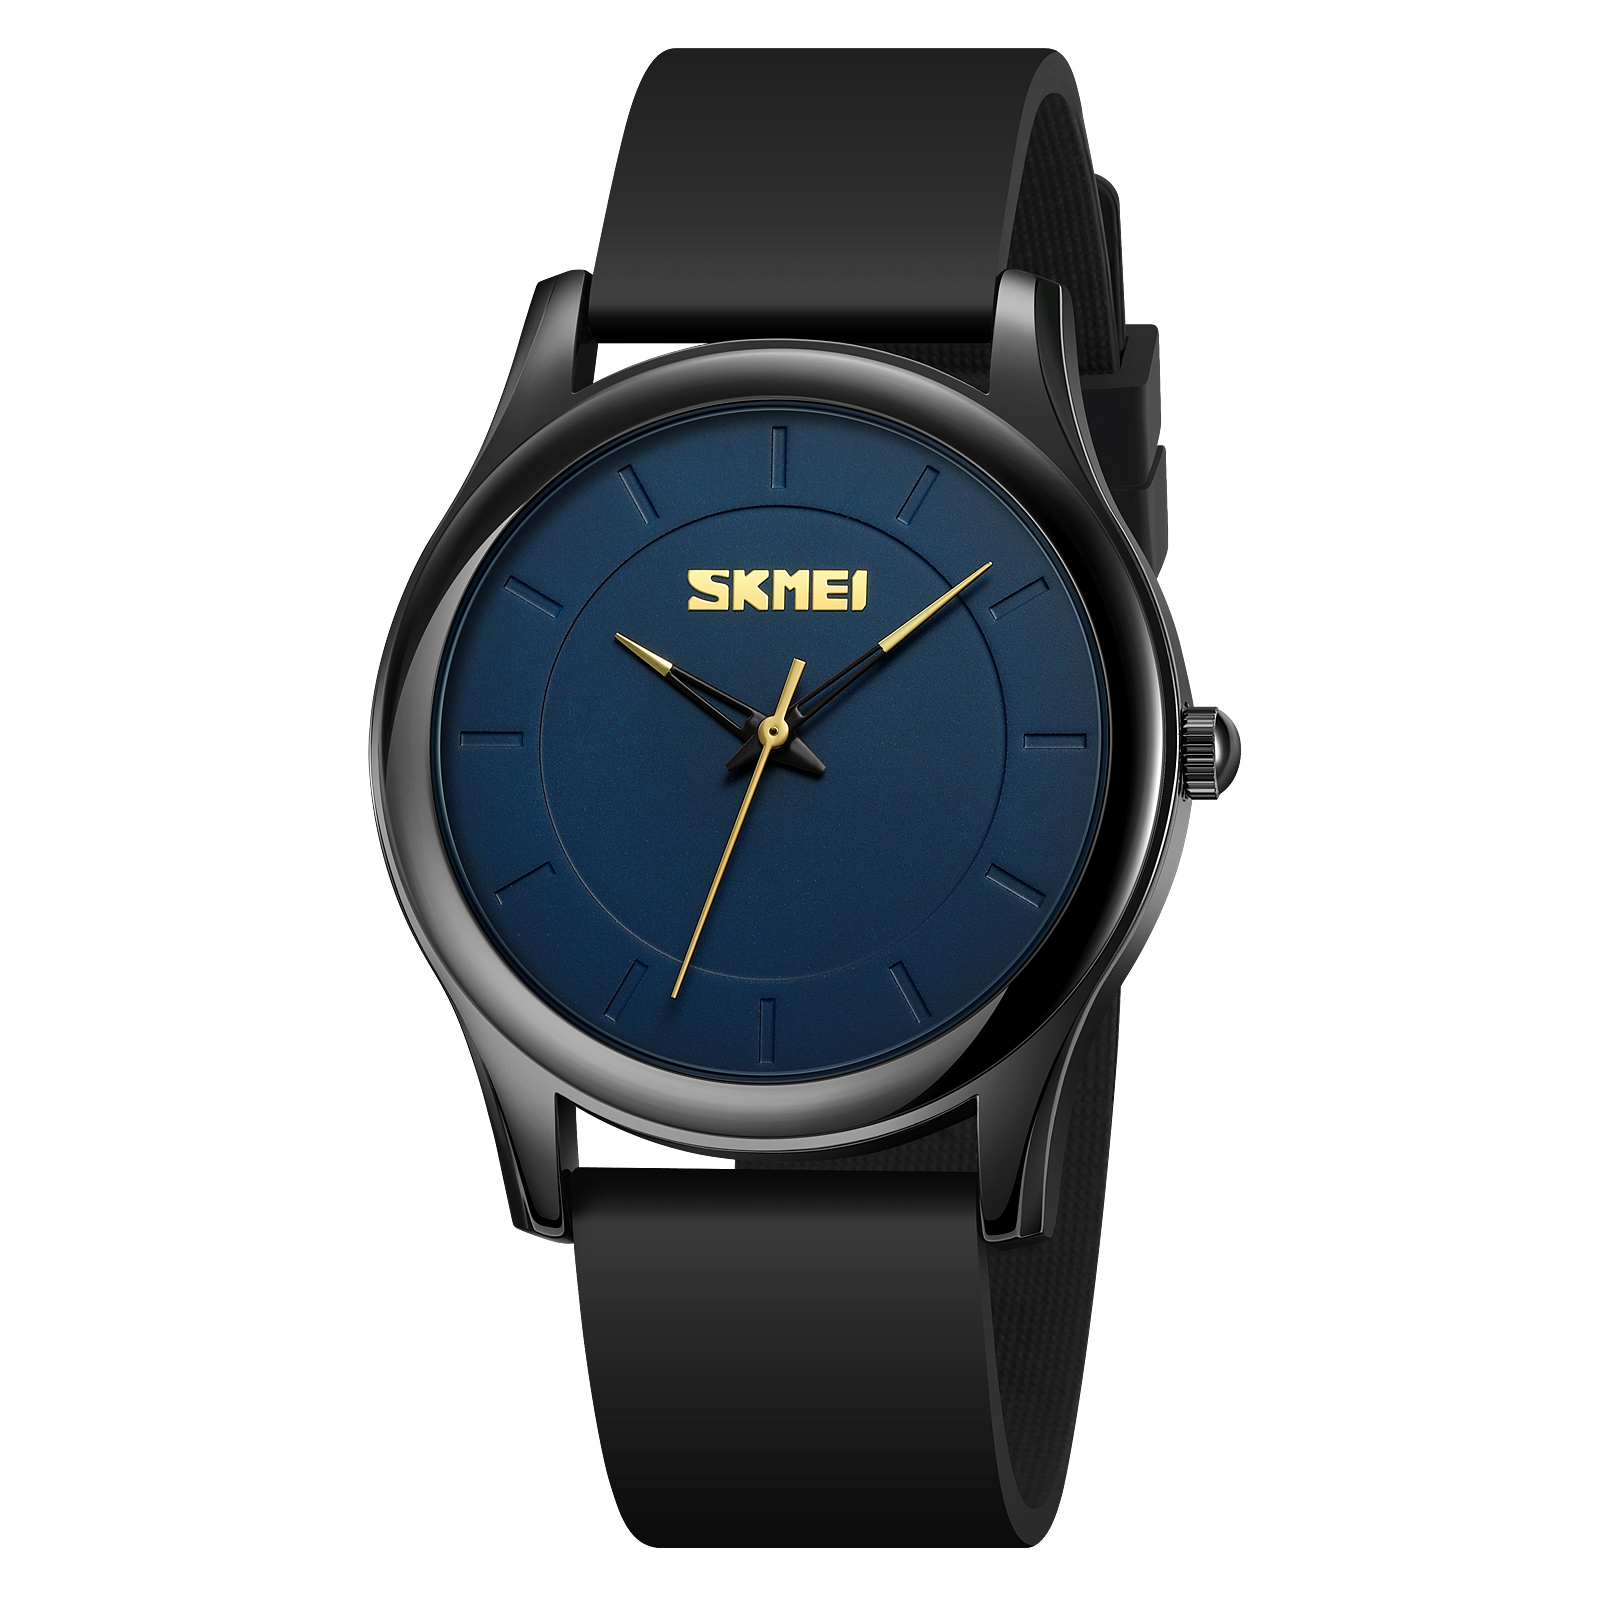 watch skmei for men-Skmei Watch Manufacture Co.,Ltd